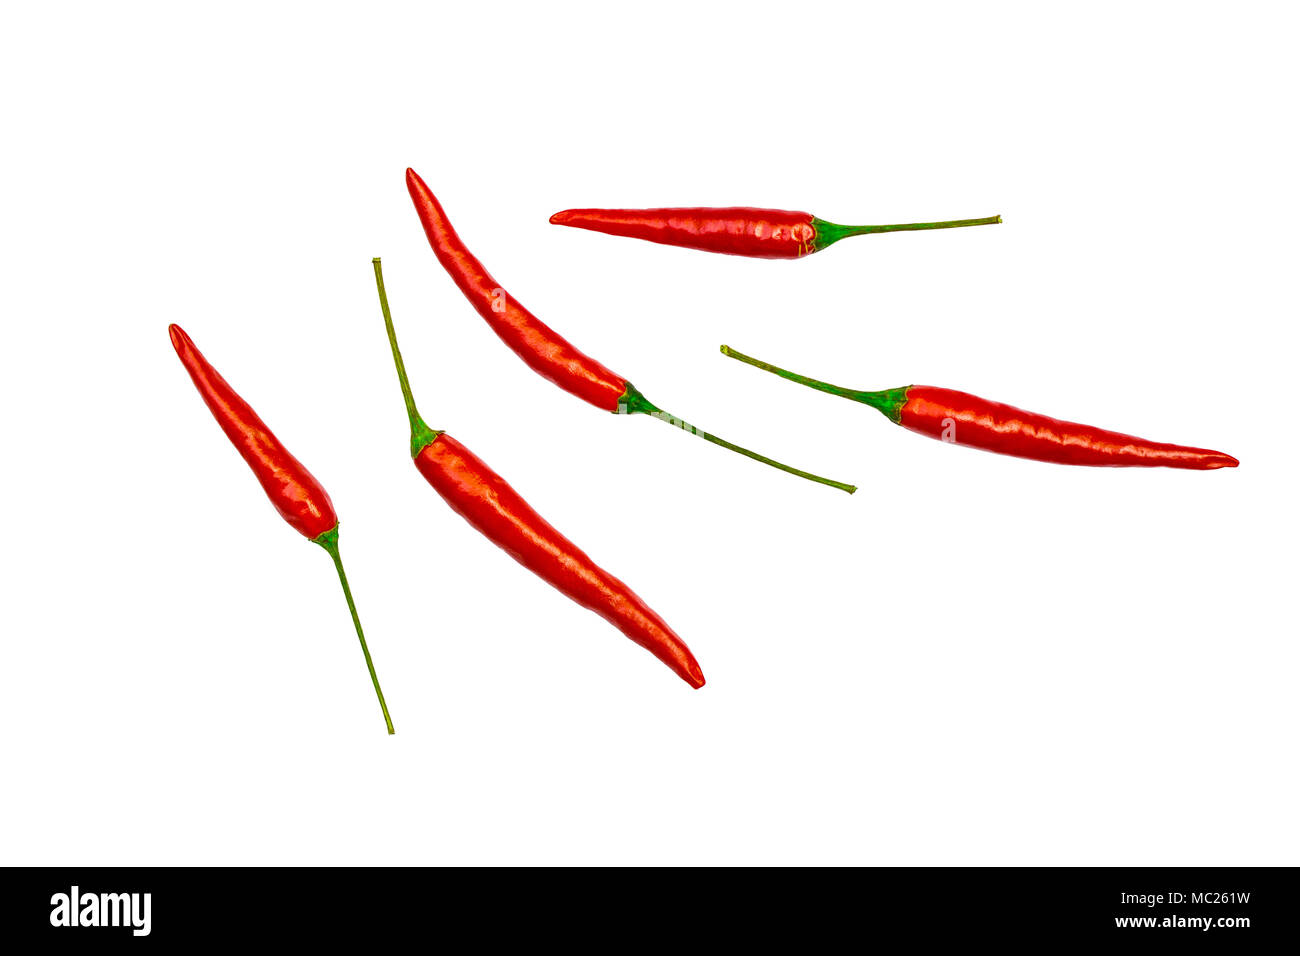 Red Hot Chili spice isolato su sfondo bianco con tracciato di ritaglio Foto Stock